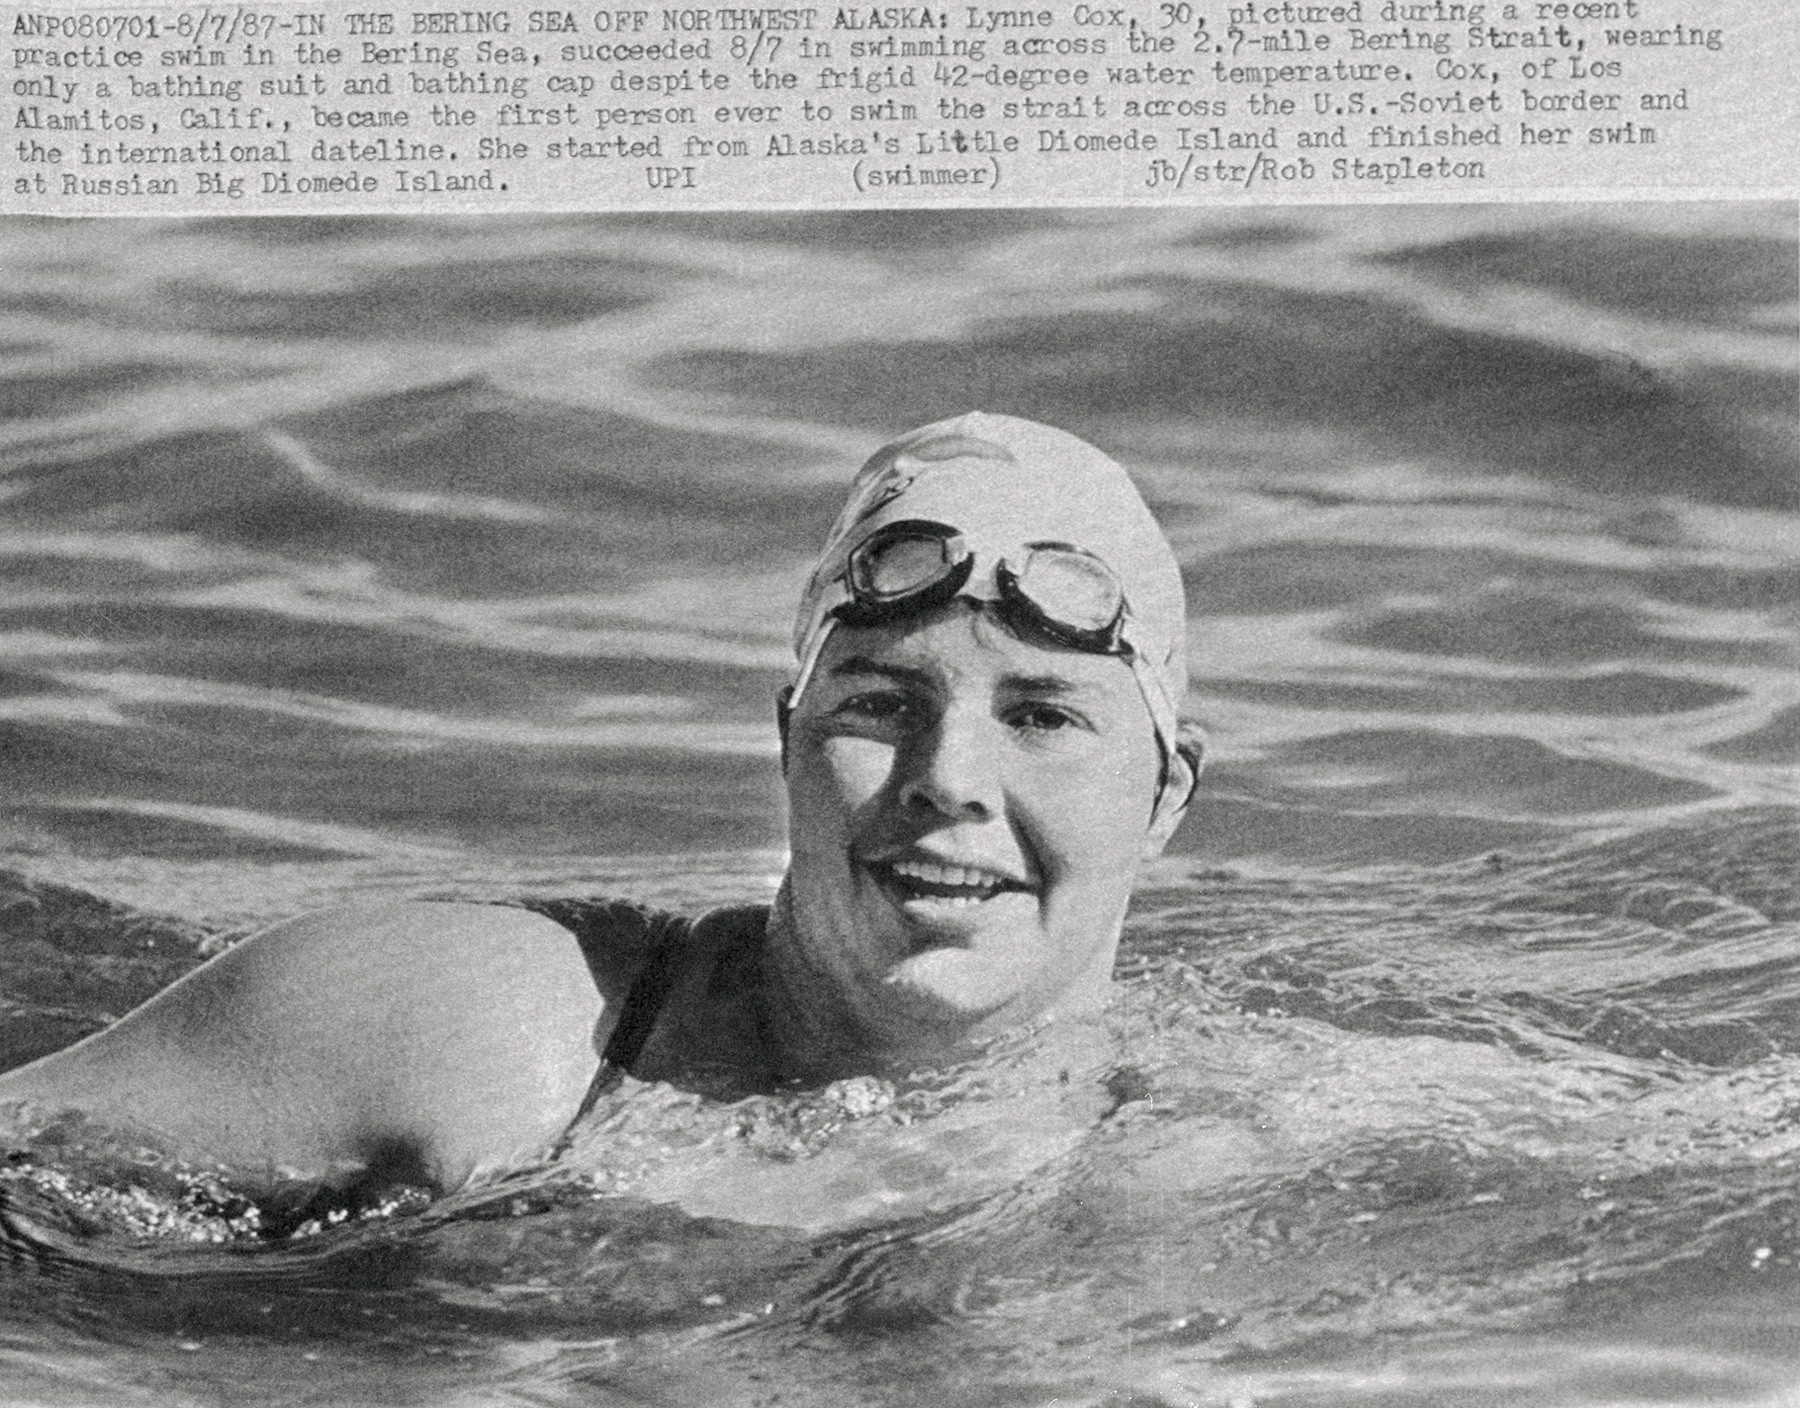 Lynne Cox, de Los Alamitos, na Califórnia, foi a primeira pessoa a nadar o estreito na fronteira entre os EUA e a União Soviética, cruzando a Linha Internacional de Data